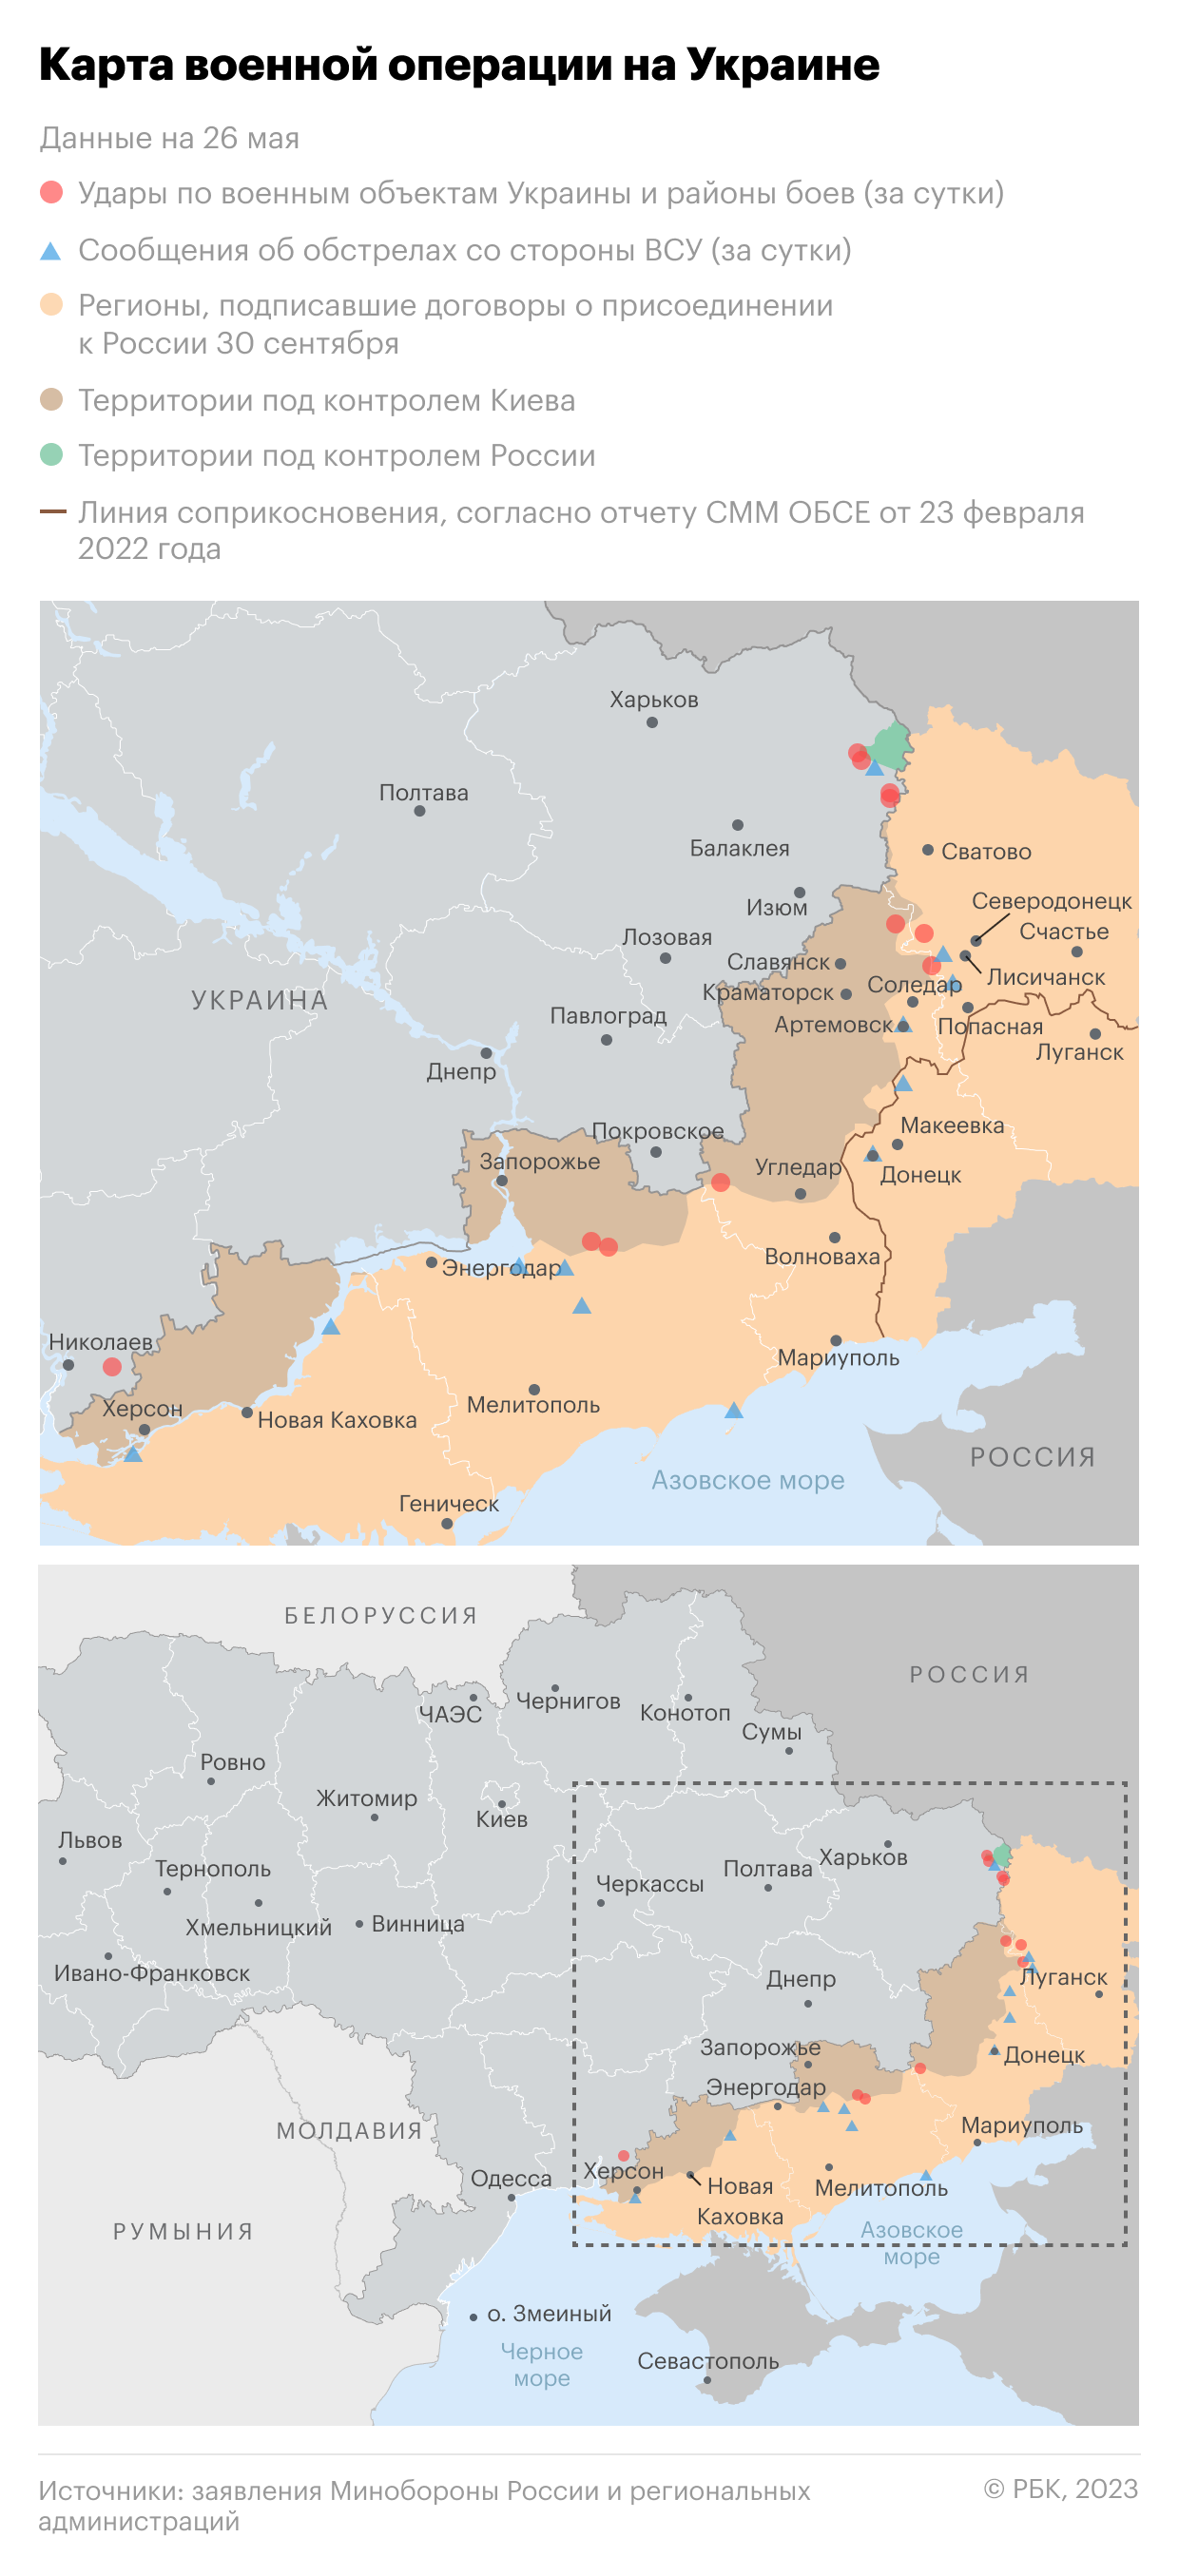 Bild назвал возможные направления украинского контрнаступления